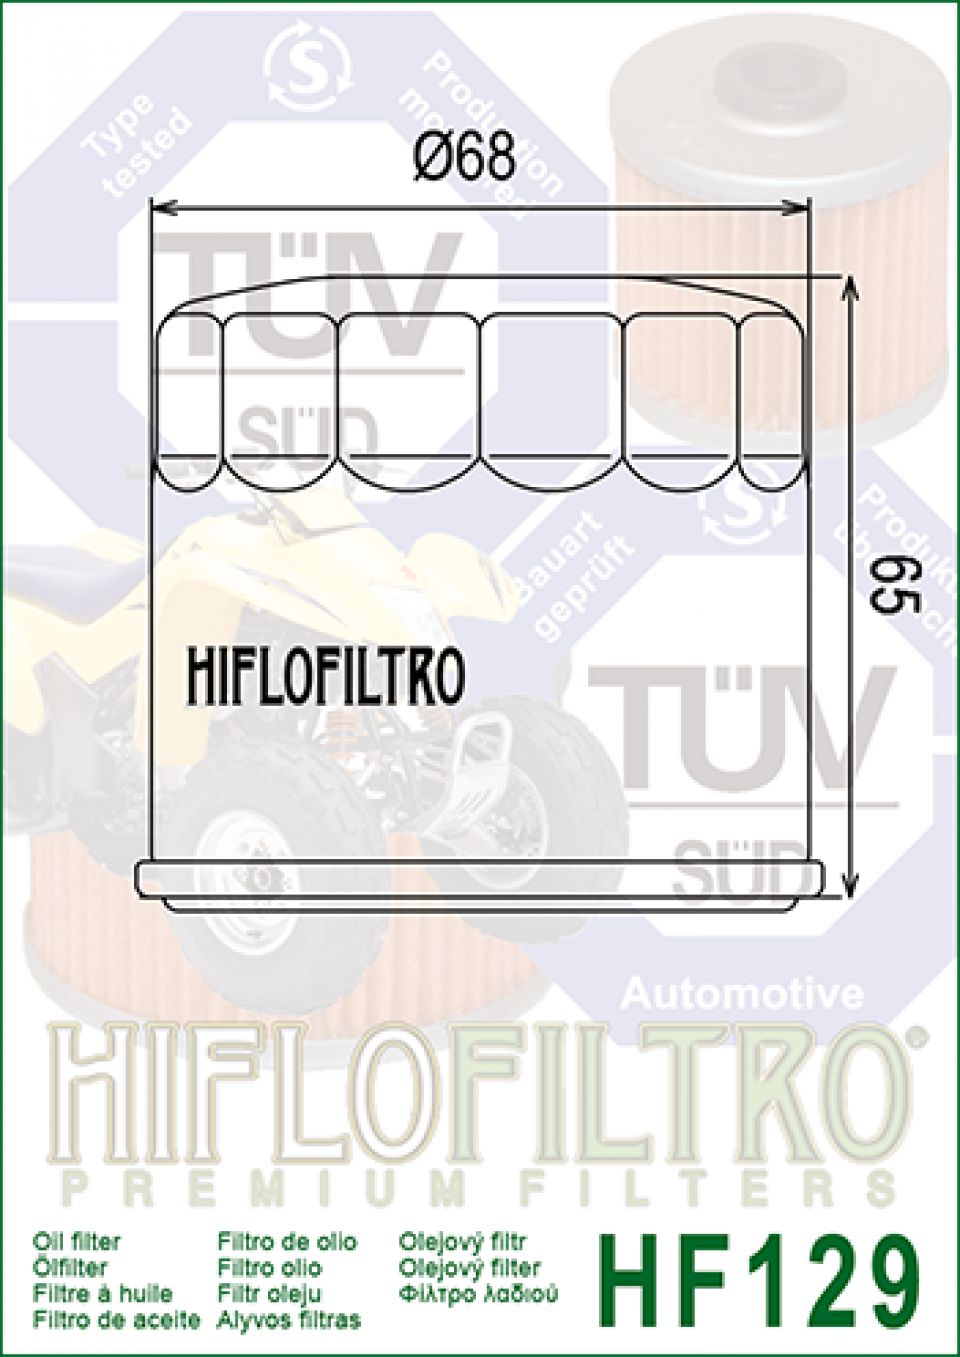 Filtre à huile Hiflofiltro pour Auto HF129 Neuf